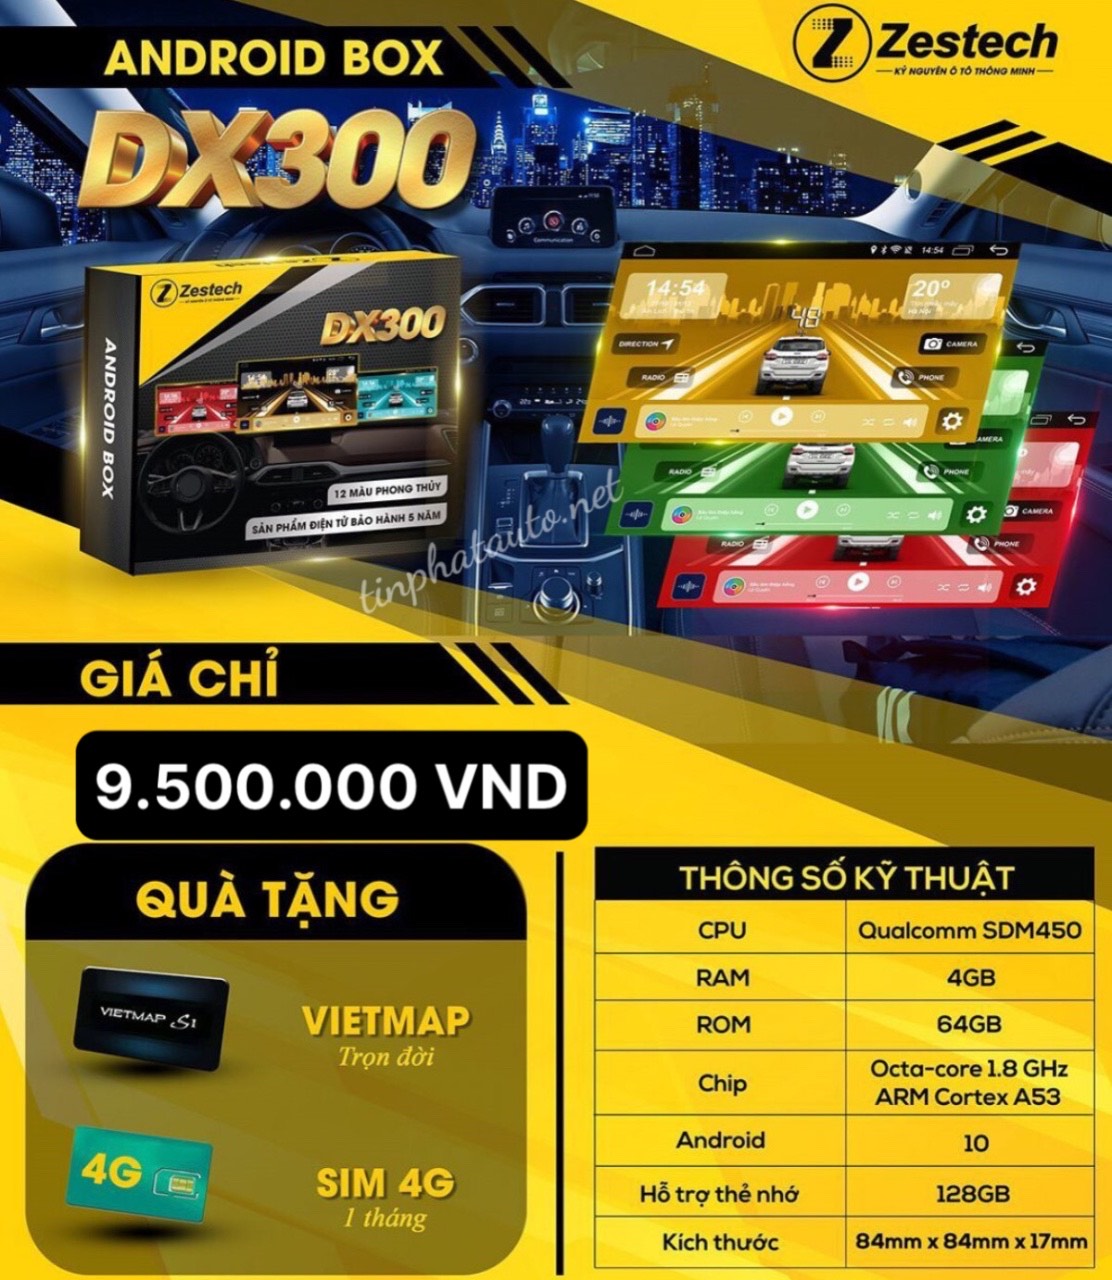 Báo Giá Android Box DX300 Zestech